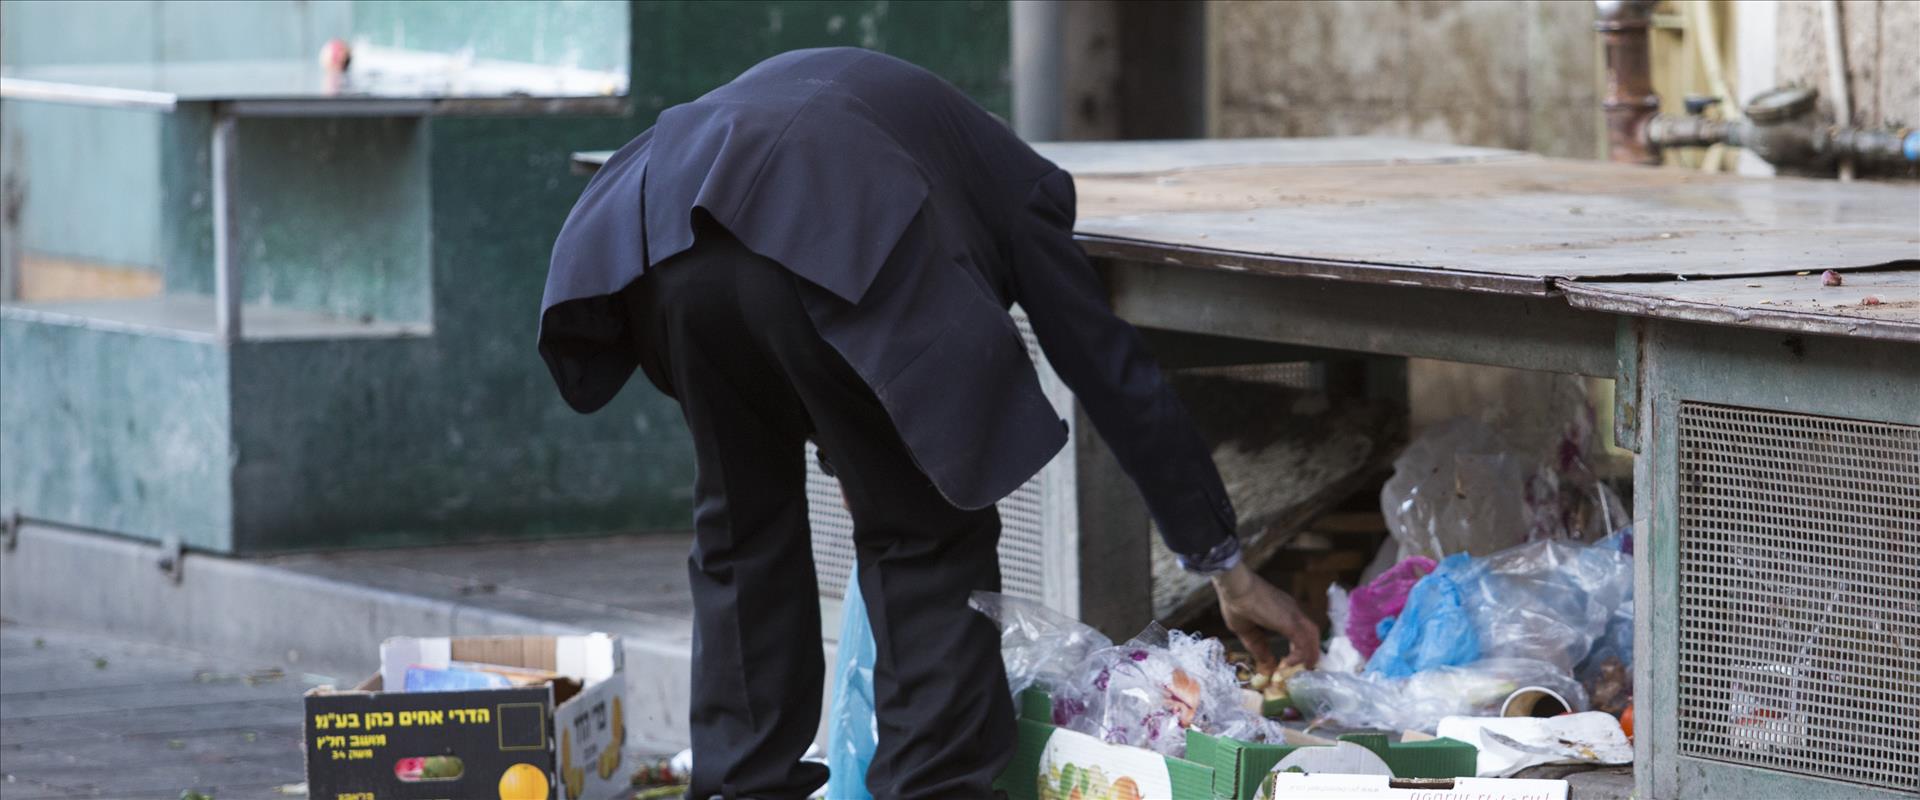 אדם מחטט באשפה בשוק מחנה יהודה בירושלים